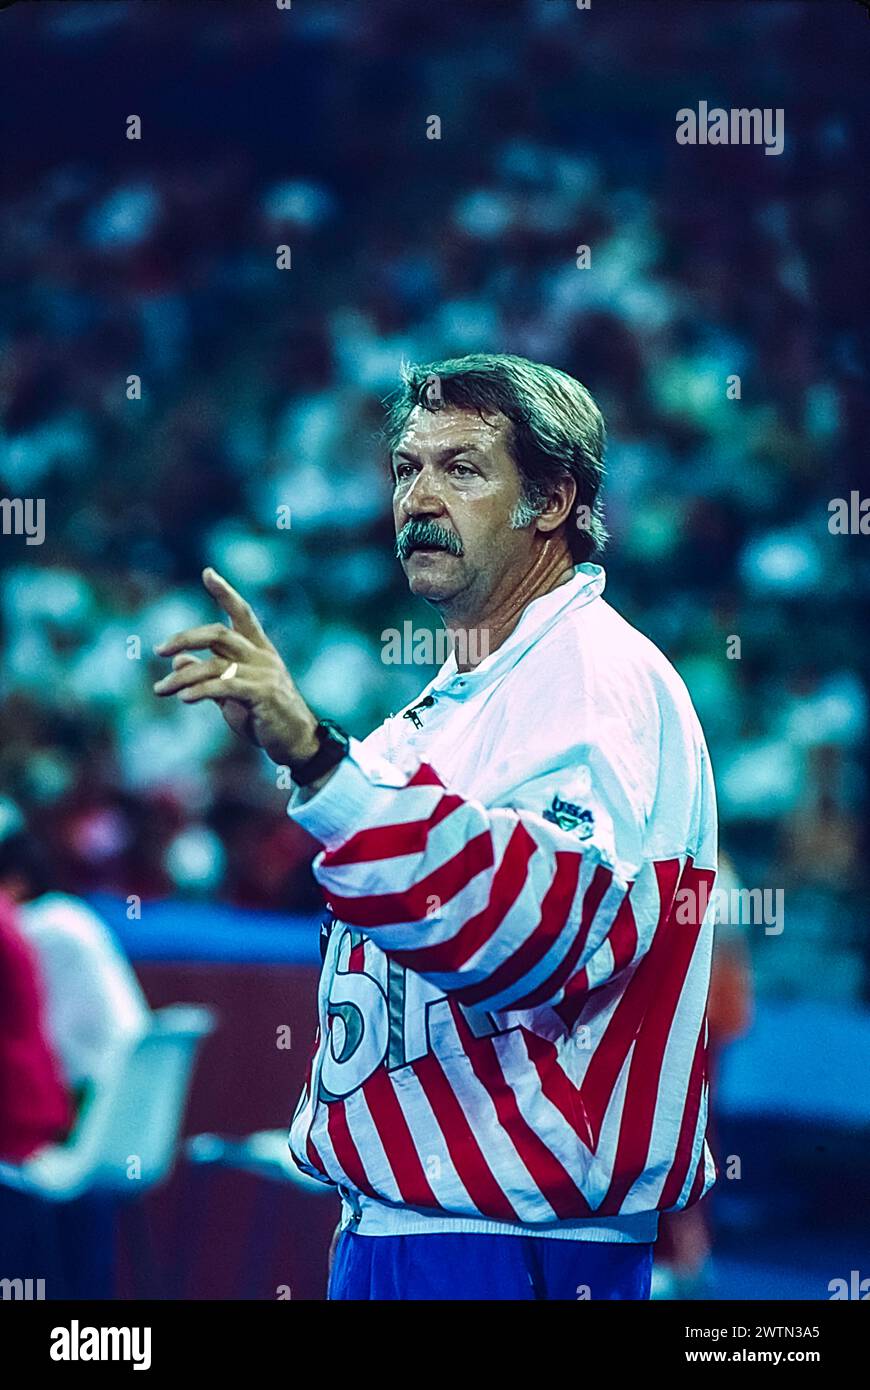 Bela Karolyi, entraîneur de l'équipe américaine, lors de l'équipe artistique féminine de gymnastique aux Jeux Olympiques d'été de 1992. Banque D'Images